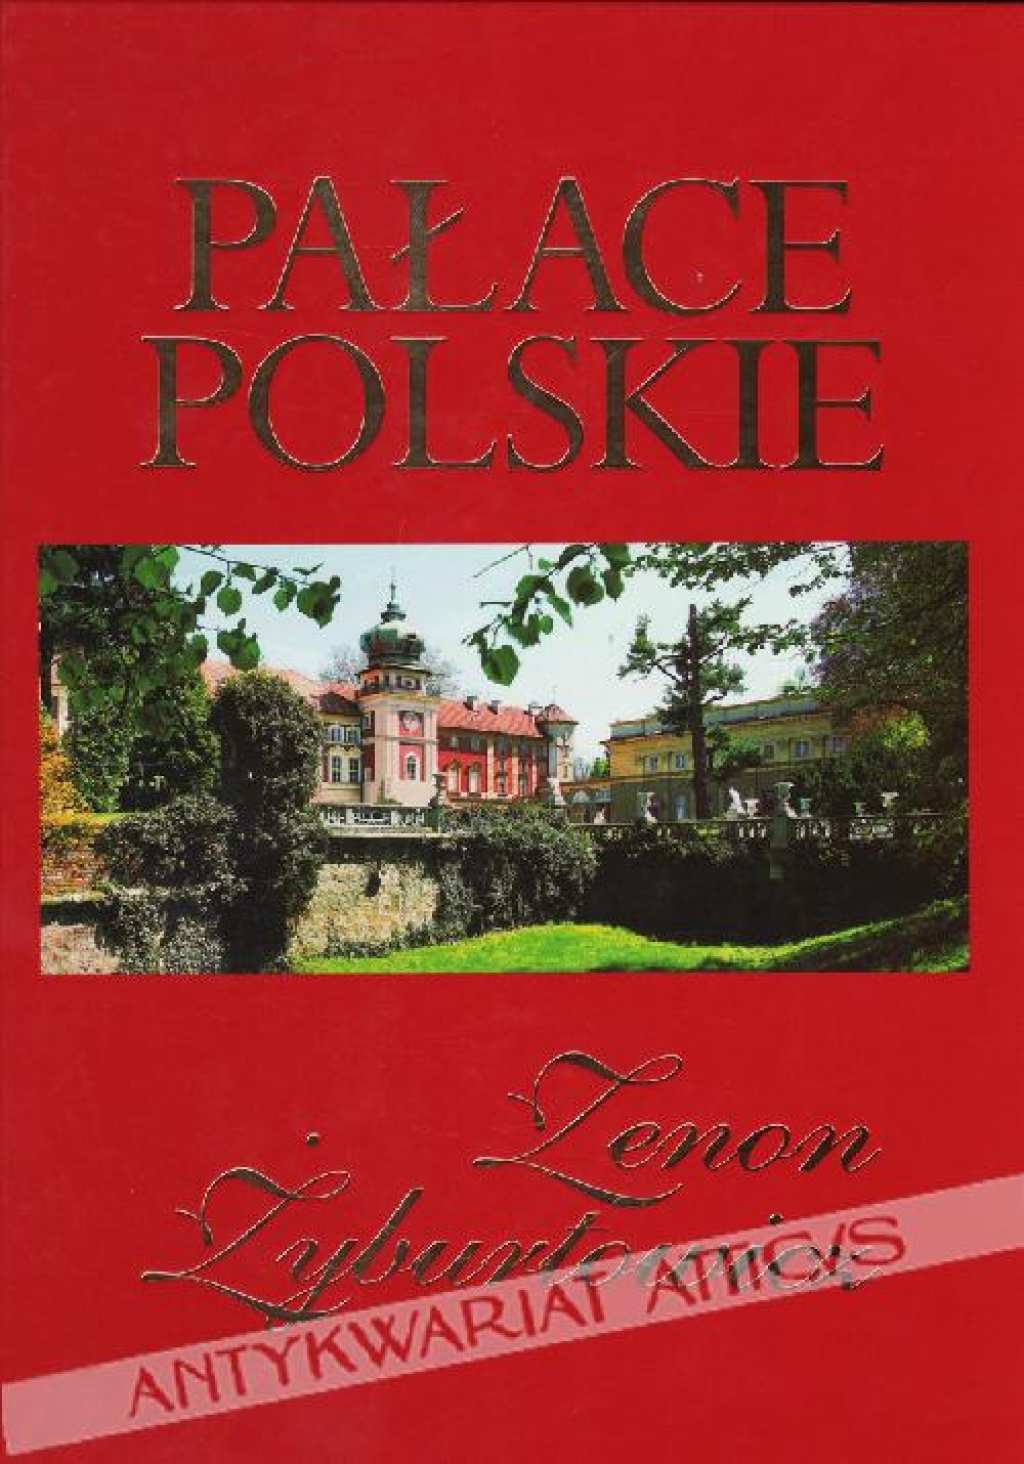 Pałace polskie [album]